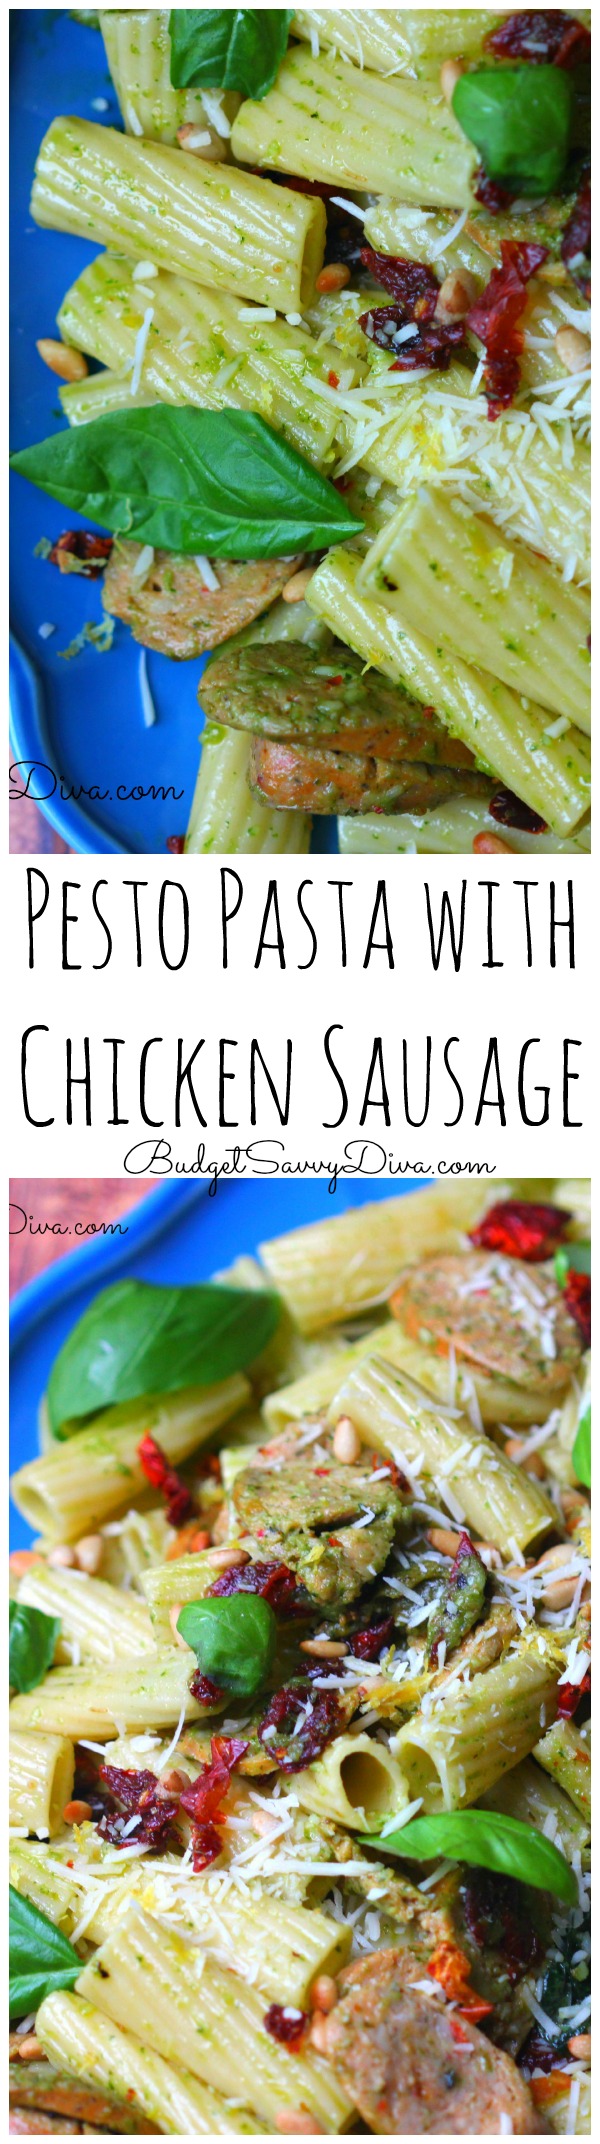 Pesto Pasta with Chicken Sausage Recipe 